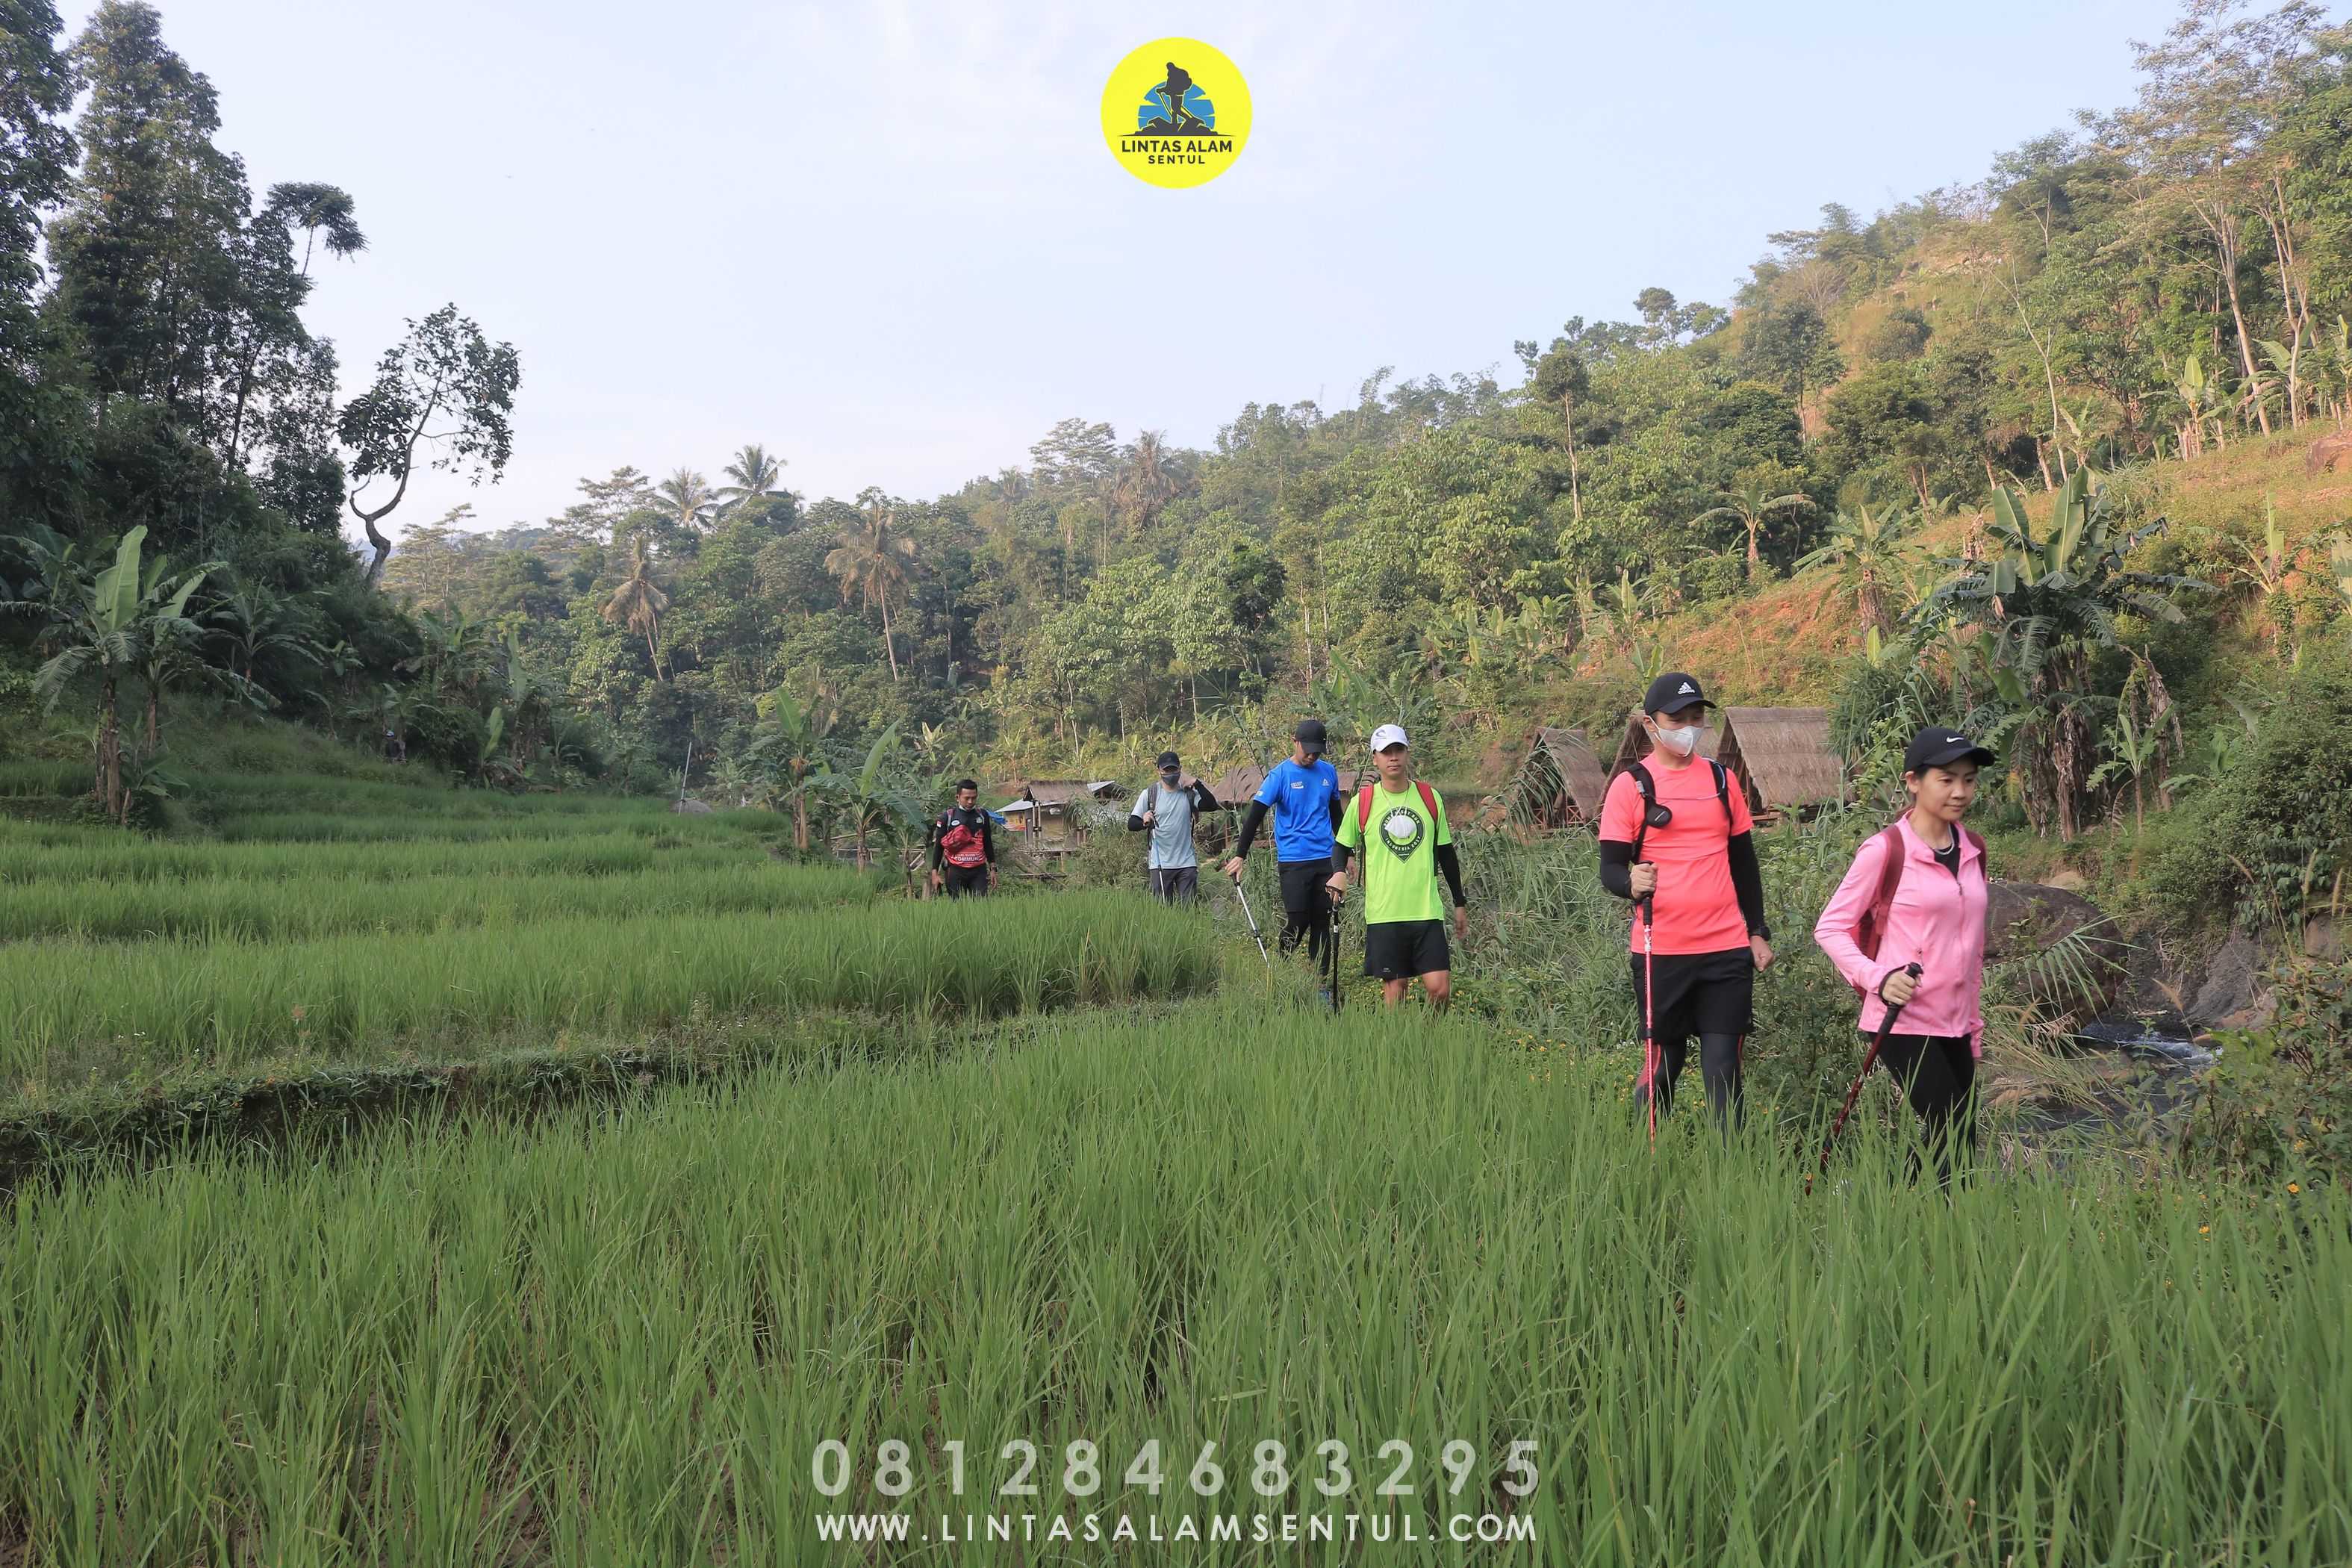 Lokasi Trekking paling favorit di Sentul Bogor